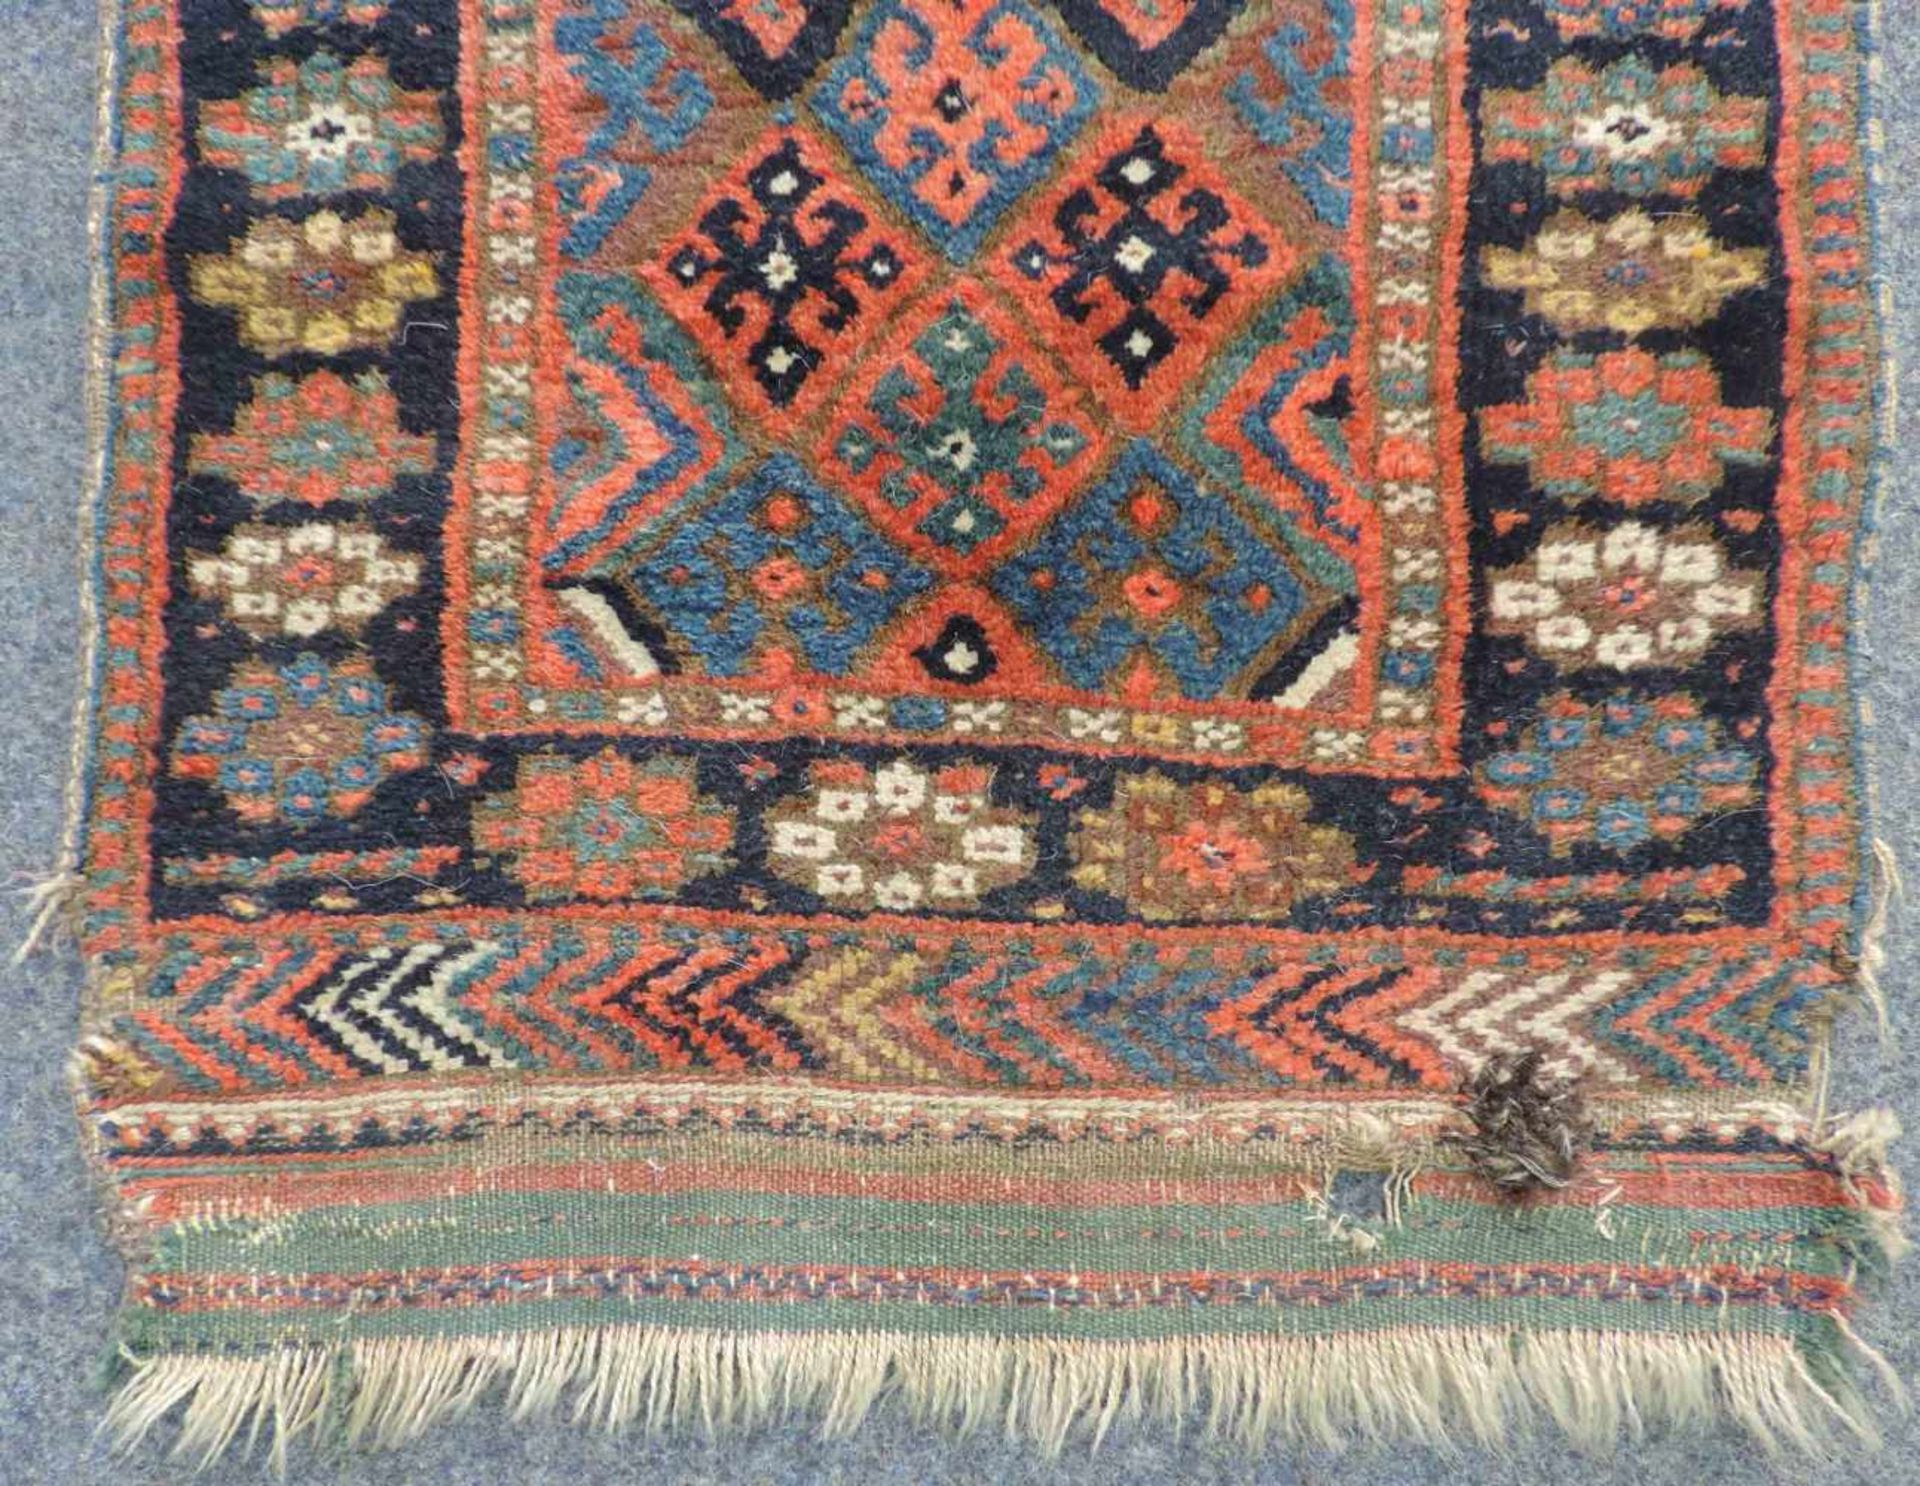 Jaff Stammesteppich. Taschenfront. Iran, antik, um 1890. 68 cm x 56 cm insgesamt. Handgeknüpft und - Bild 3 aus 5